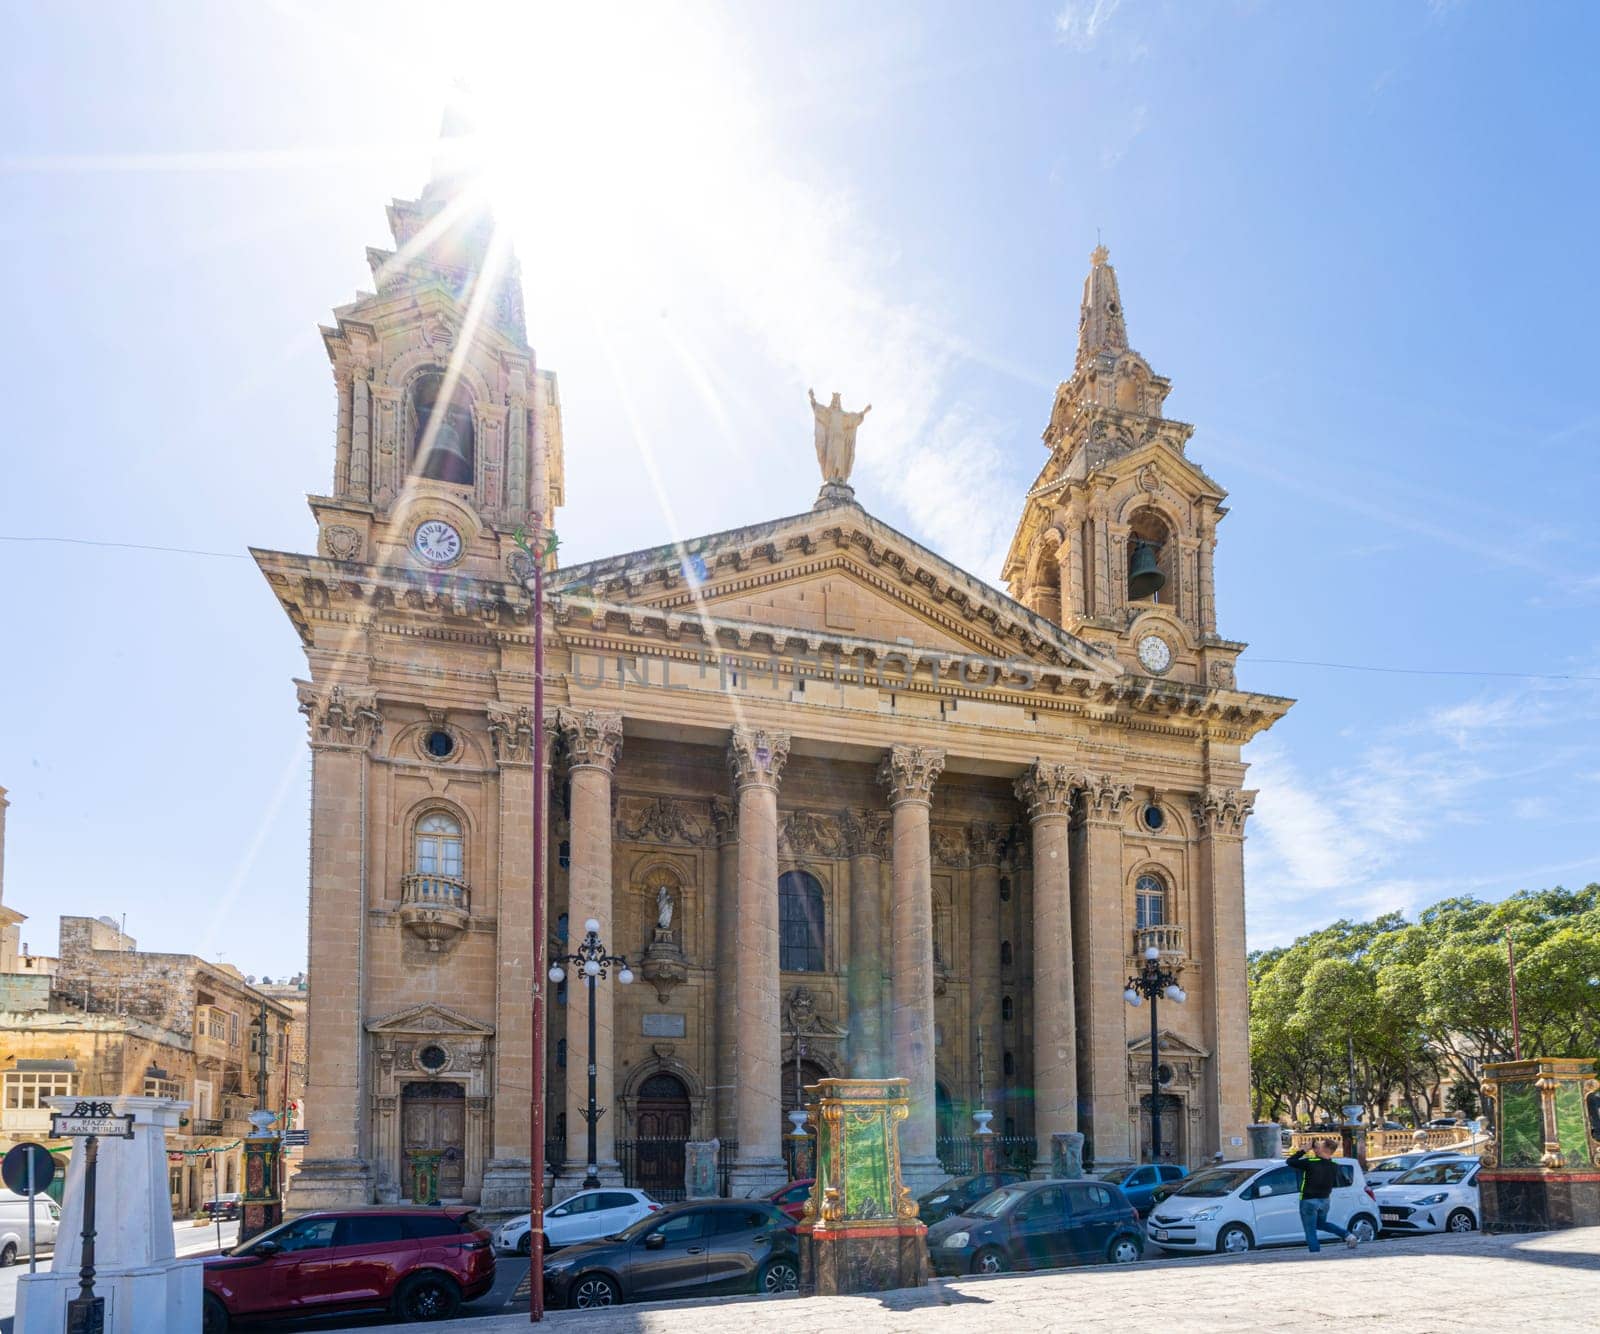 San Publiju church in Floriana, Malta by sergiodv